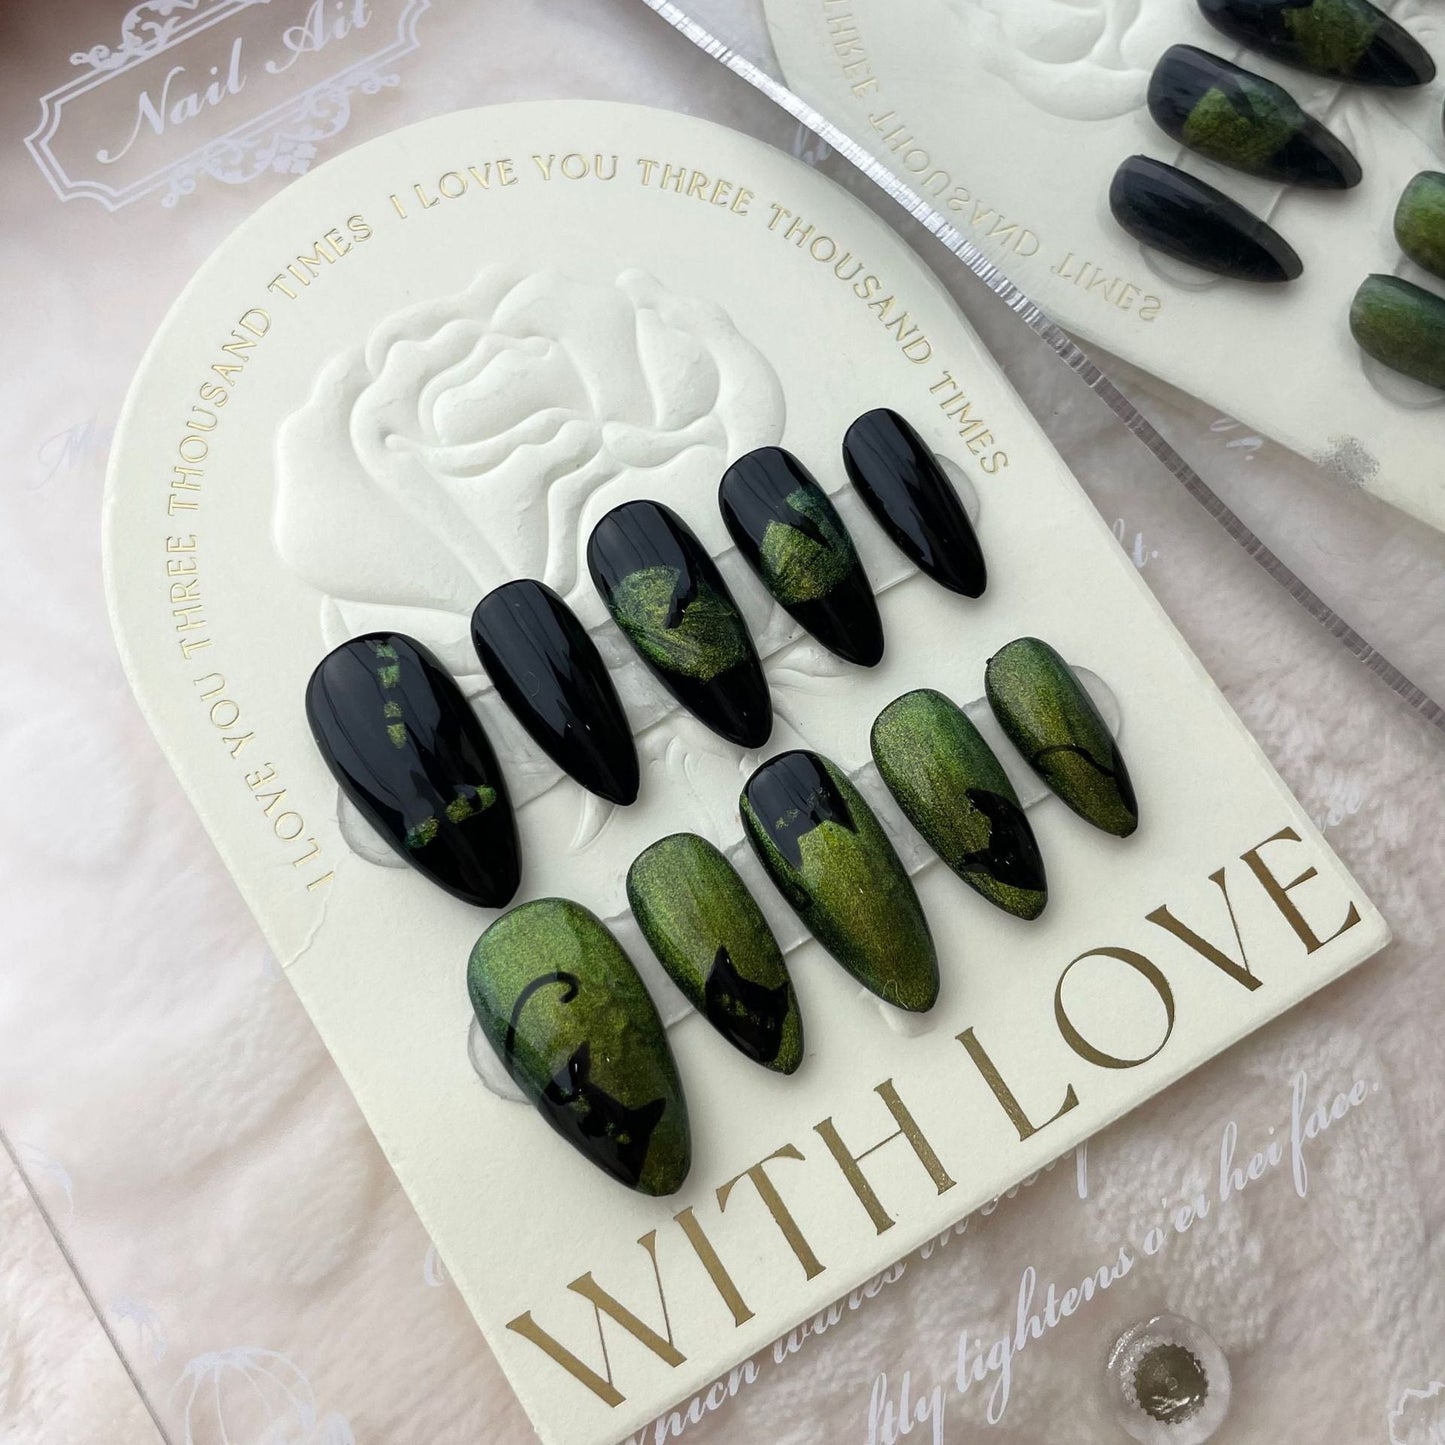 520 Coole kattenogen stijl pers op nagels 100% handgemaakte kunstnagels zwart groen